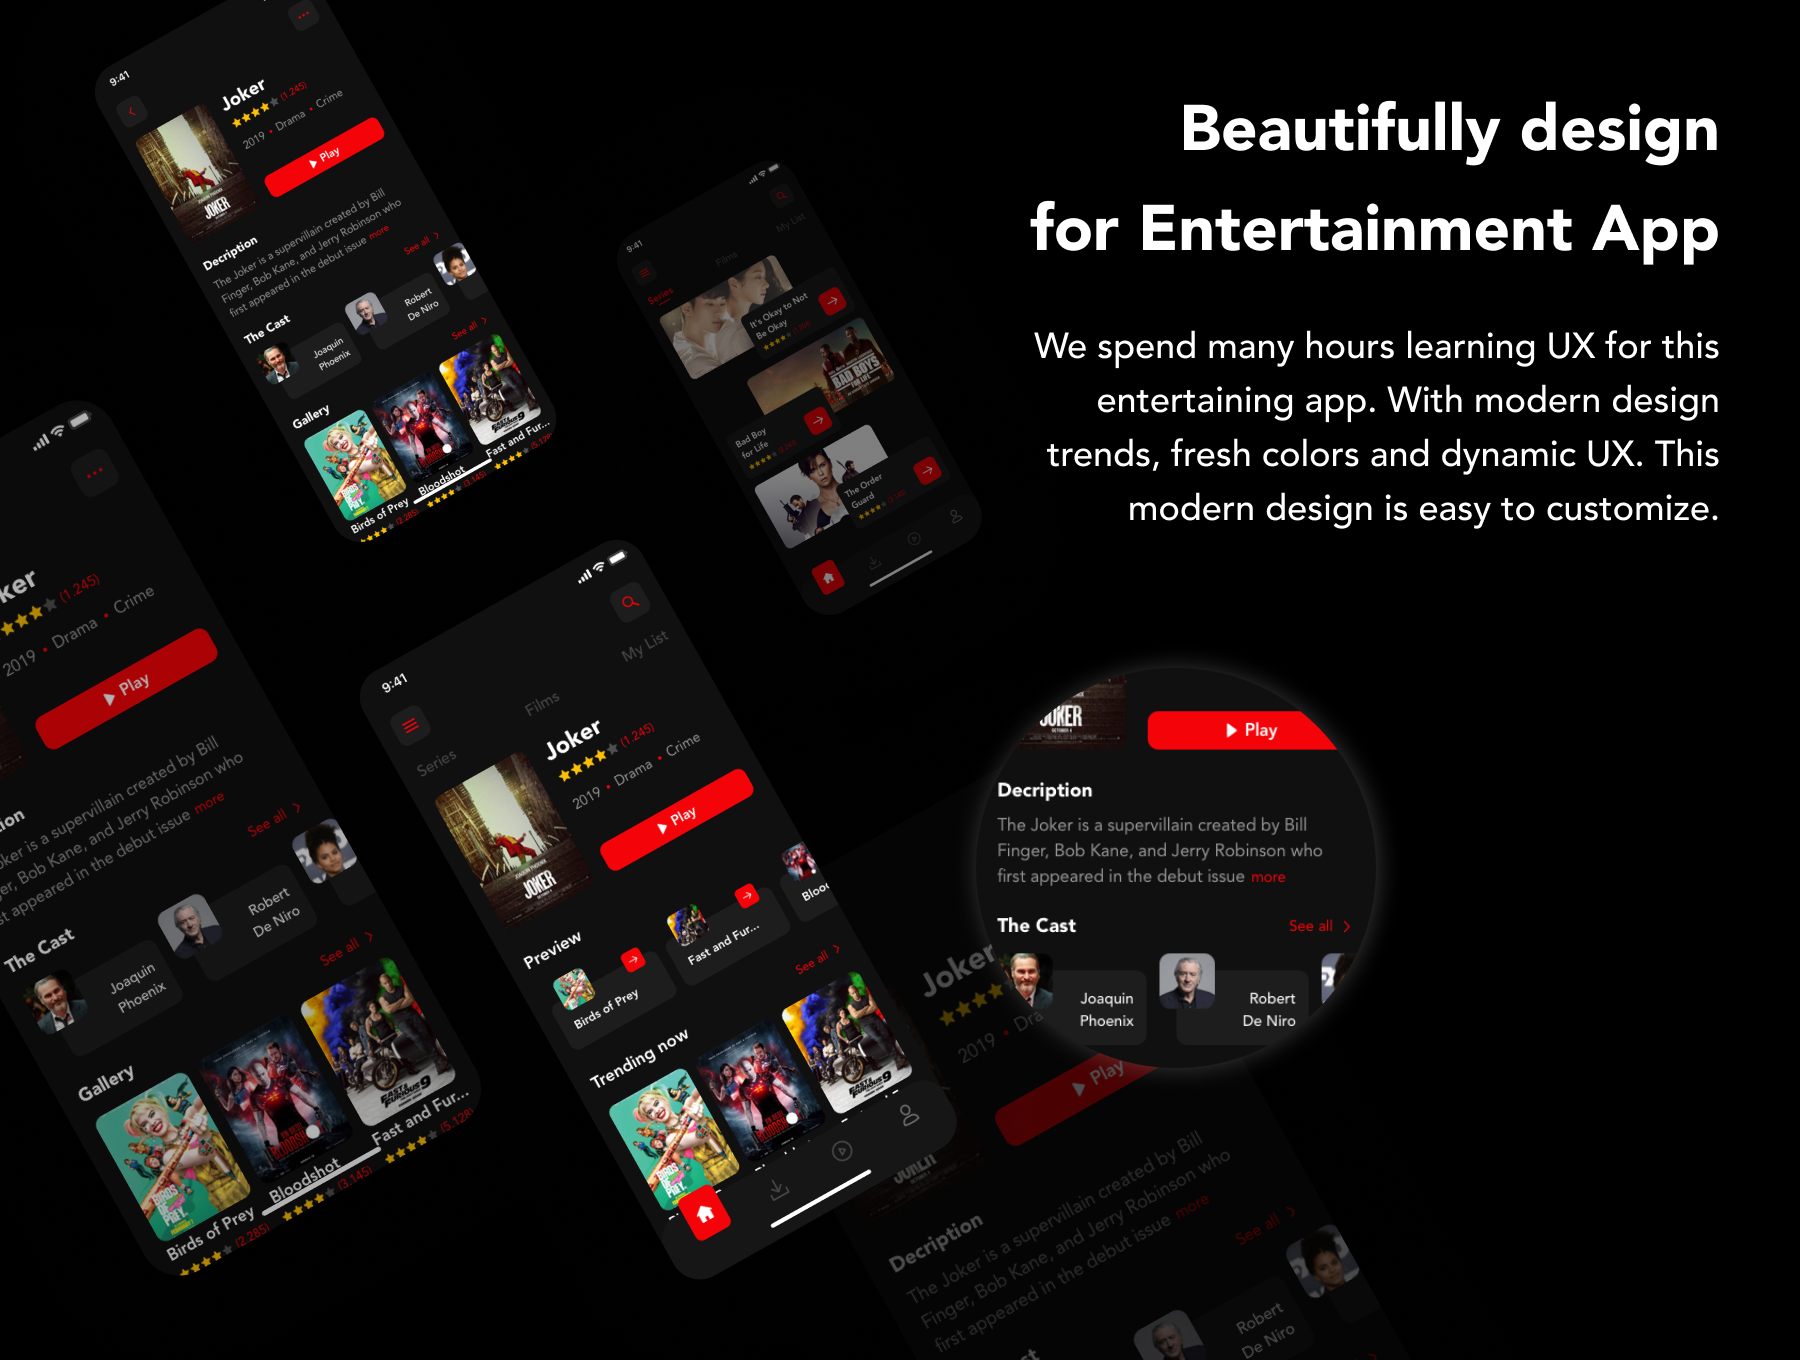 دانلود UI Kit اپلیکیشن موبایل فیلم و سریال WaFilm